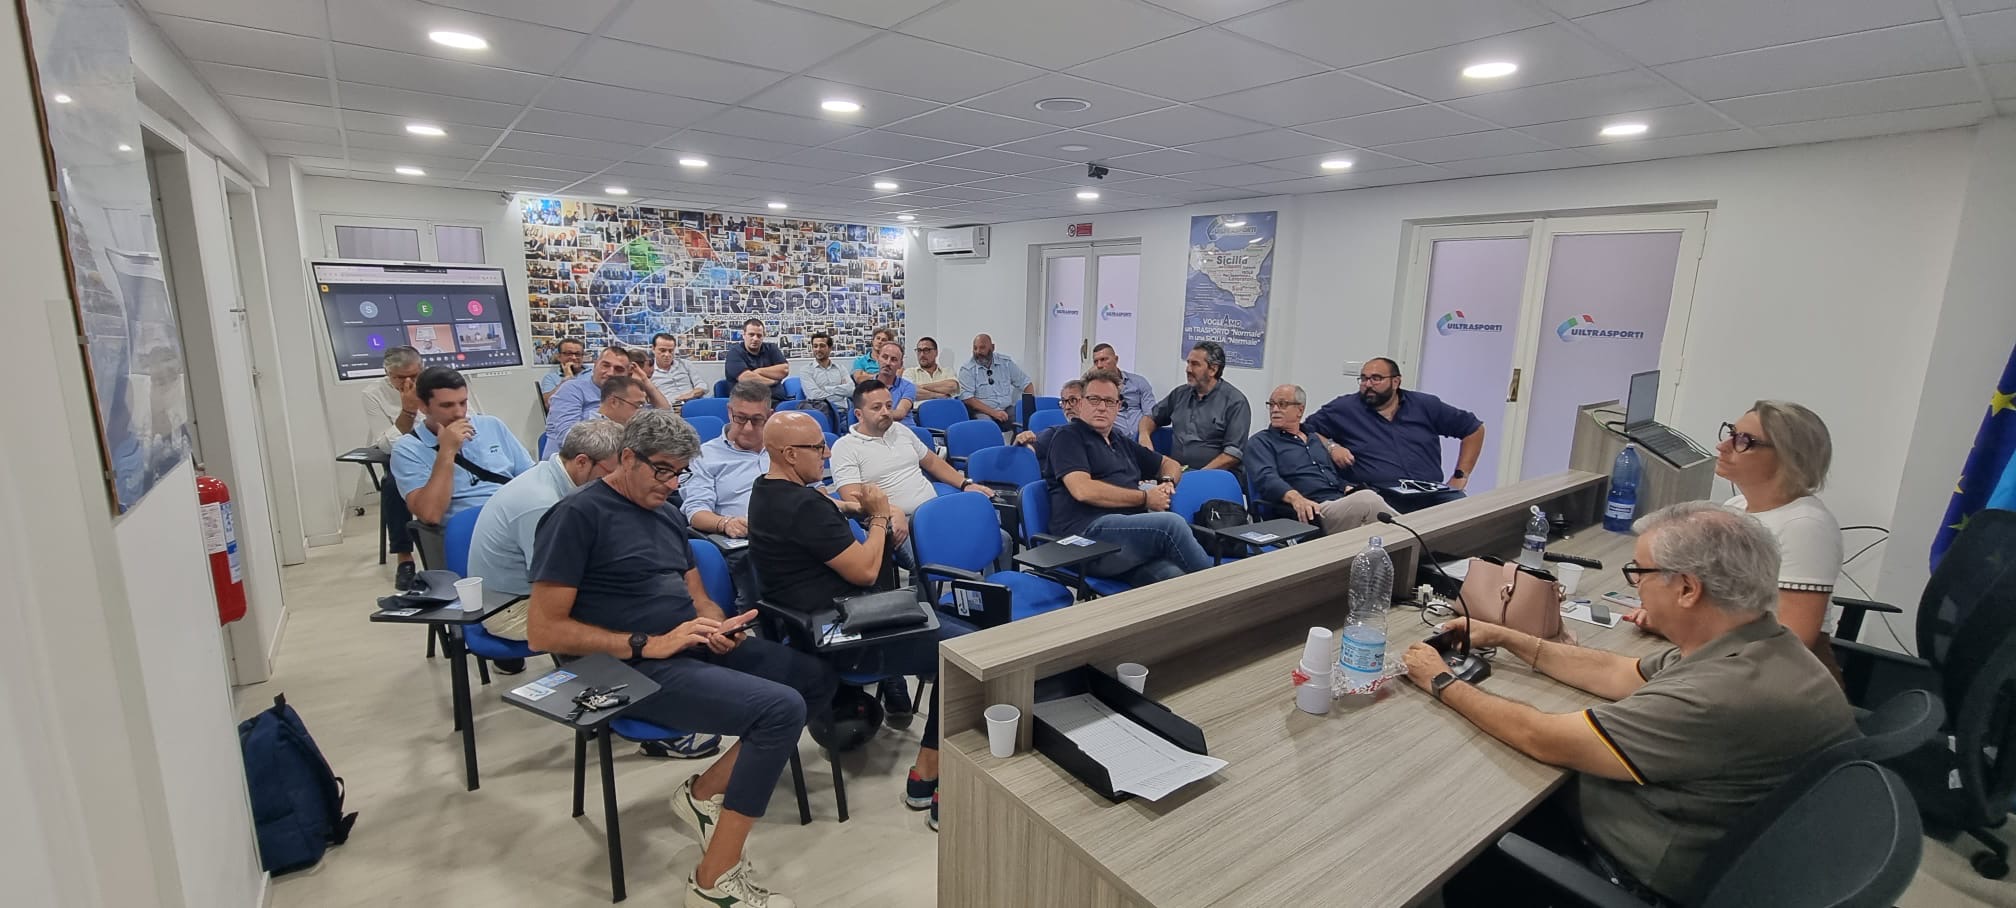 Amat, Uiltrasporti Sicilia, incontro con i lavoratori